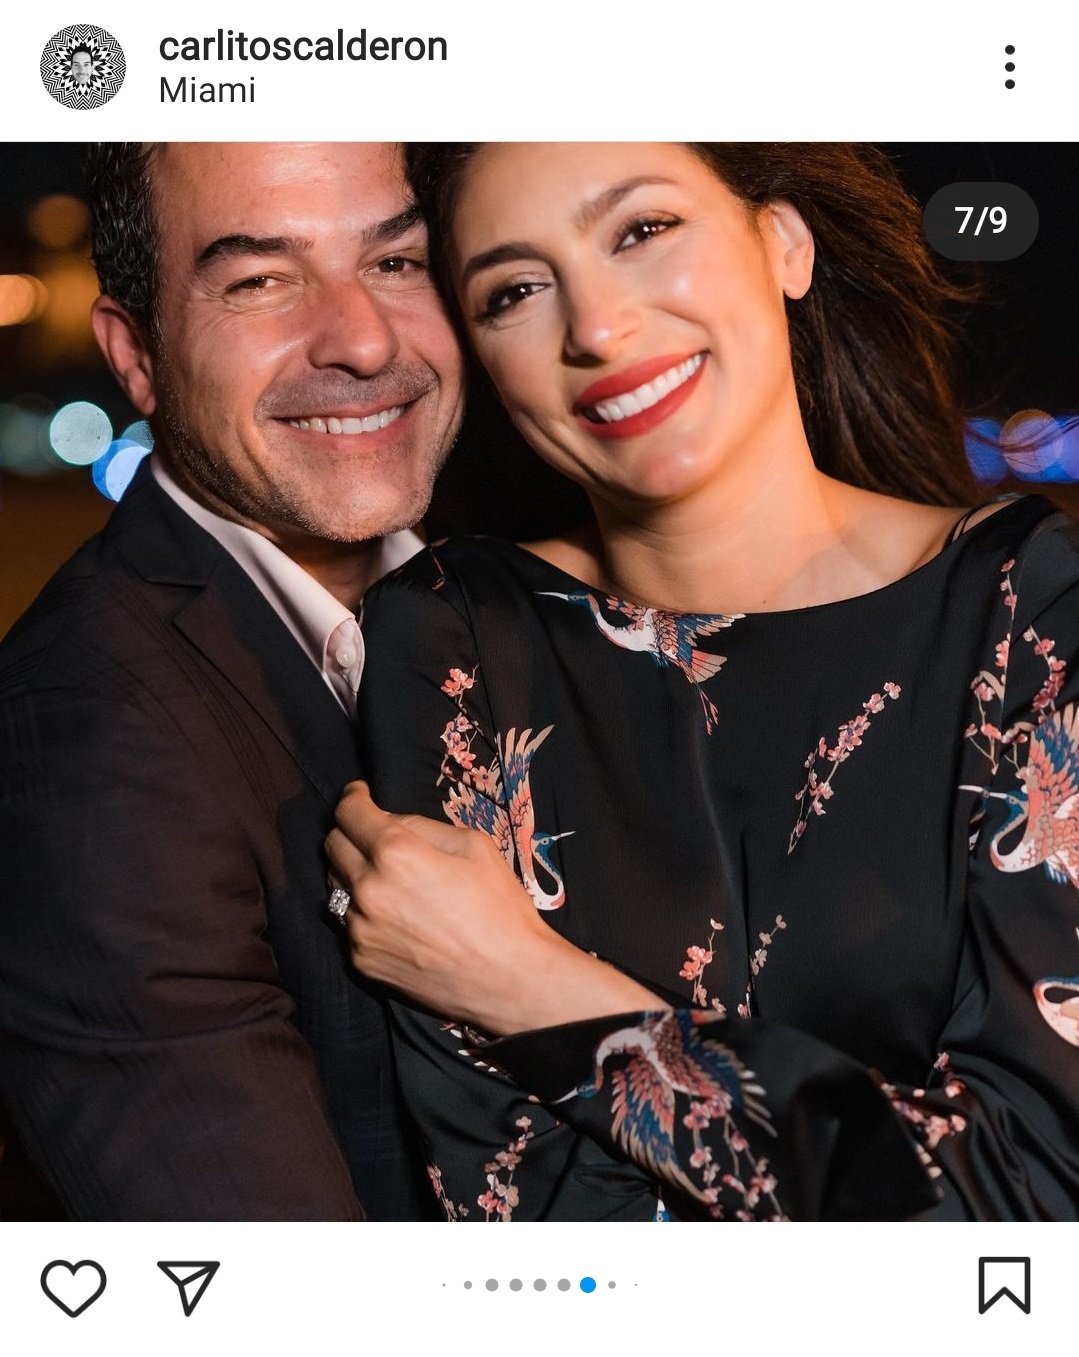 Propuesta de matrimonio de Carlos a Vanessa. | Foto: Captura de pantalla de Instagram/carlitoscalderon